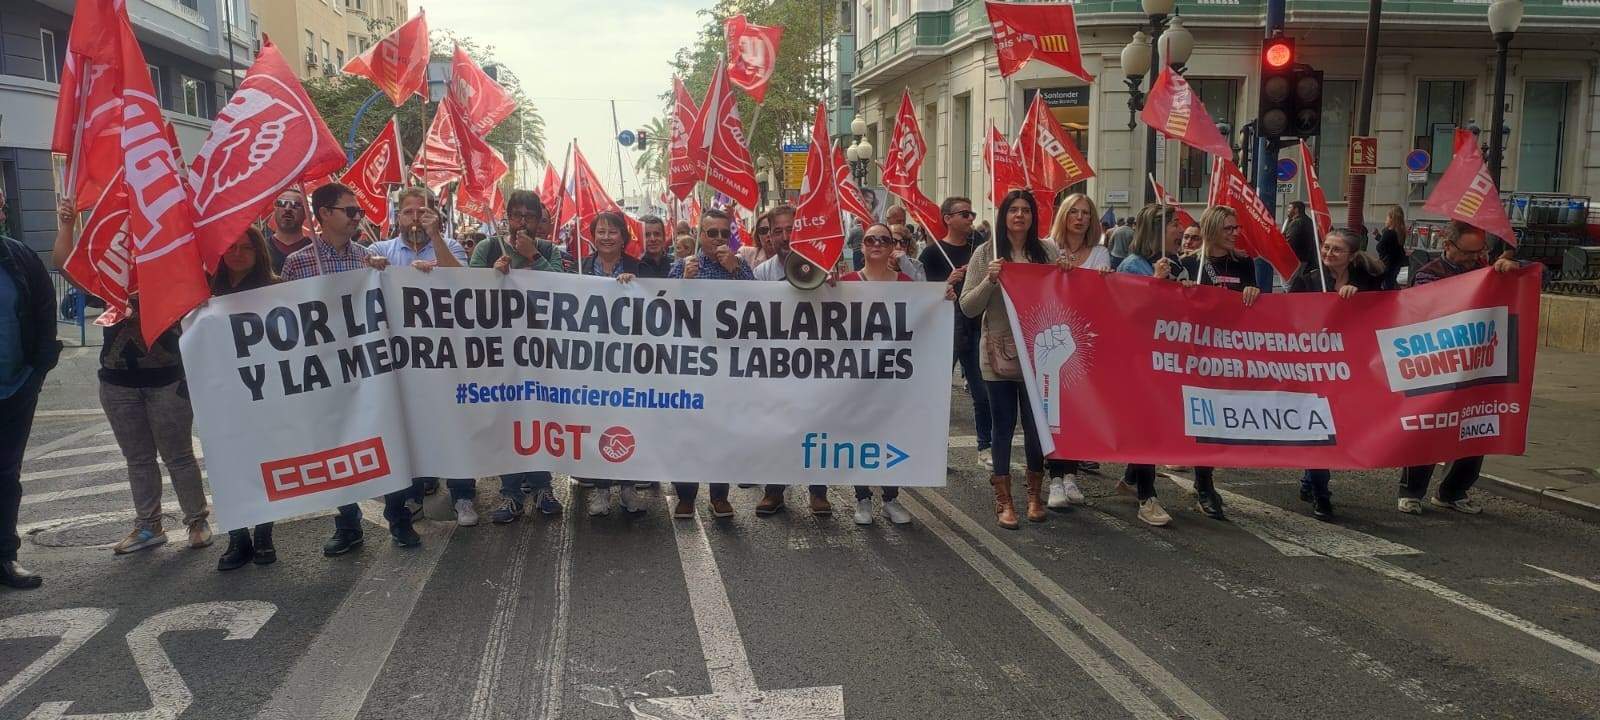 Sabadell calma a los sindicatos ante las protestas: el acuerdo salarial llegará “pronto”